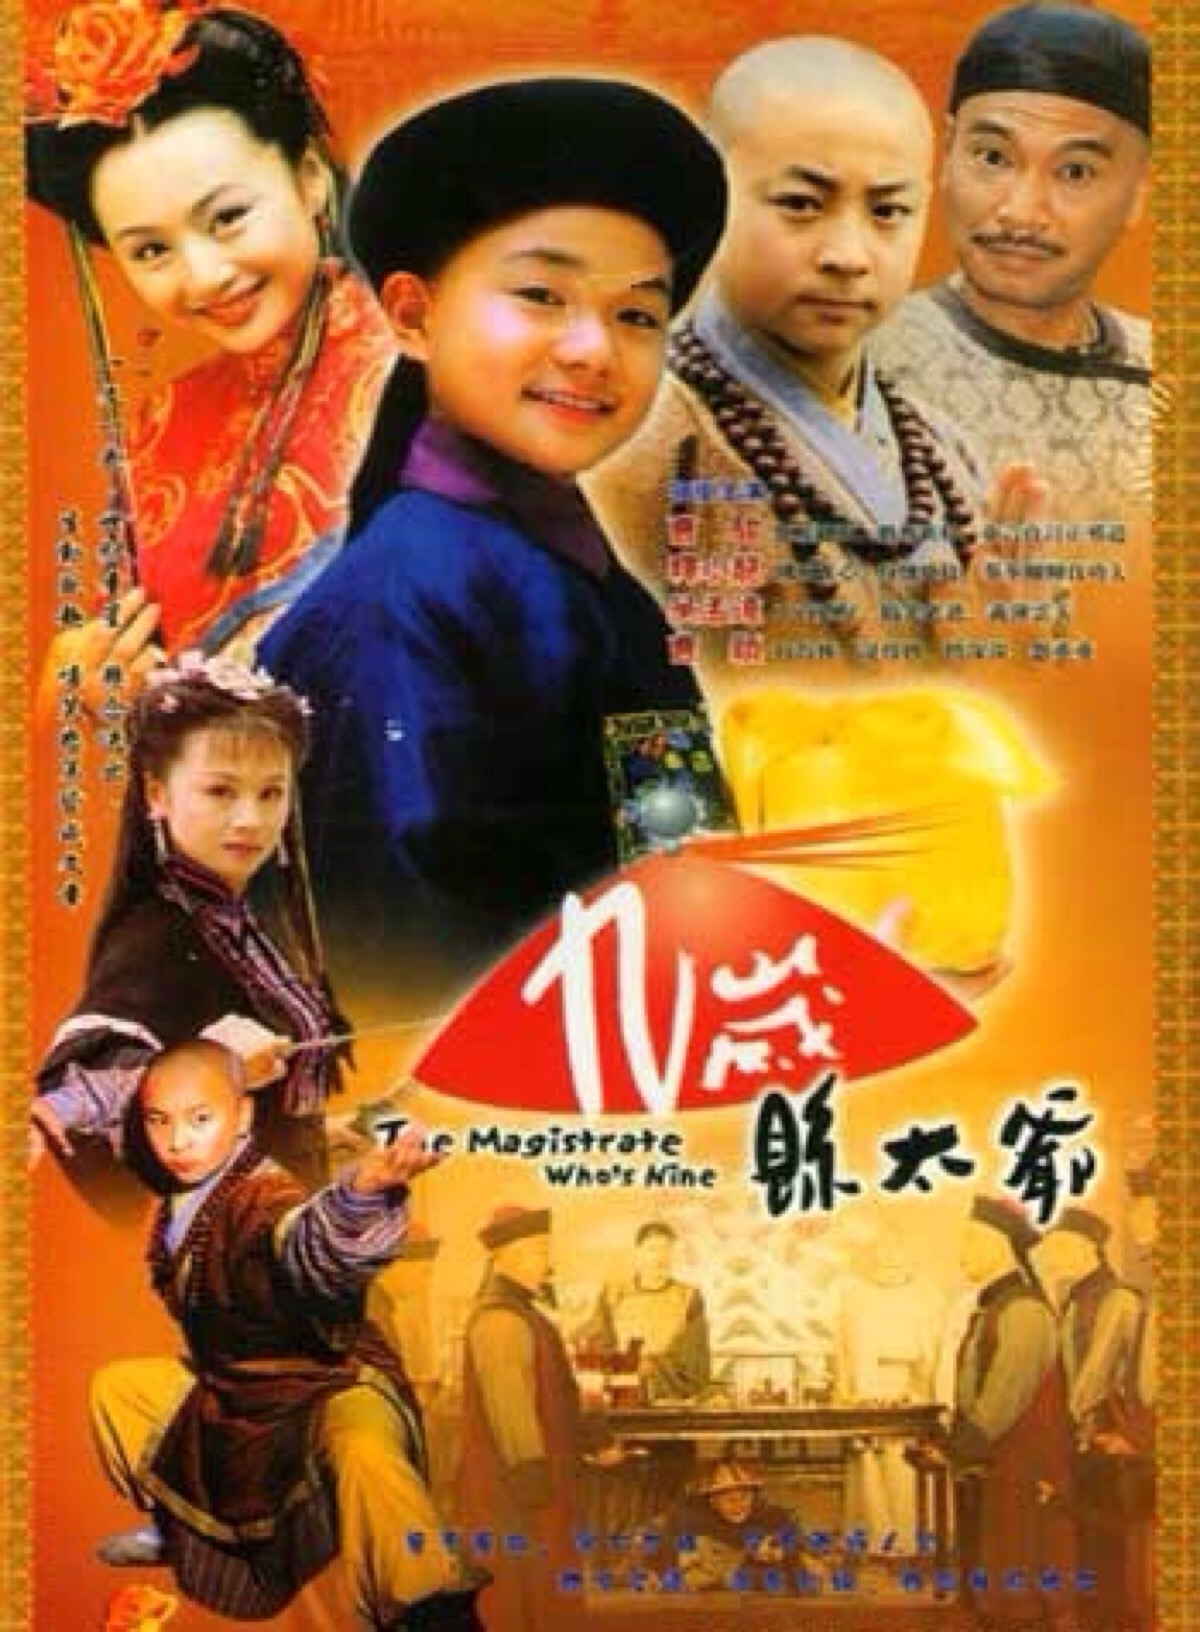 《九岁县太爷》是一部由黄海刚导演,曹骏-堆糖,美好生活研究所